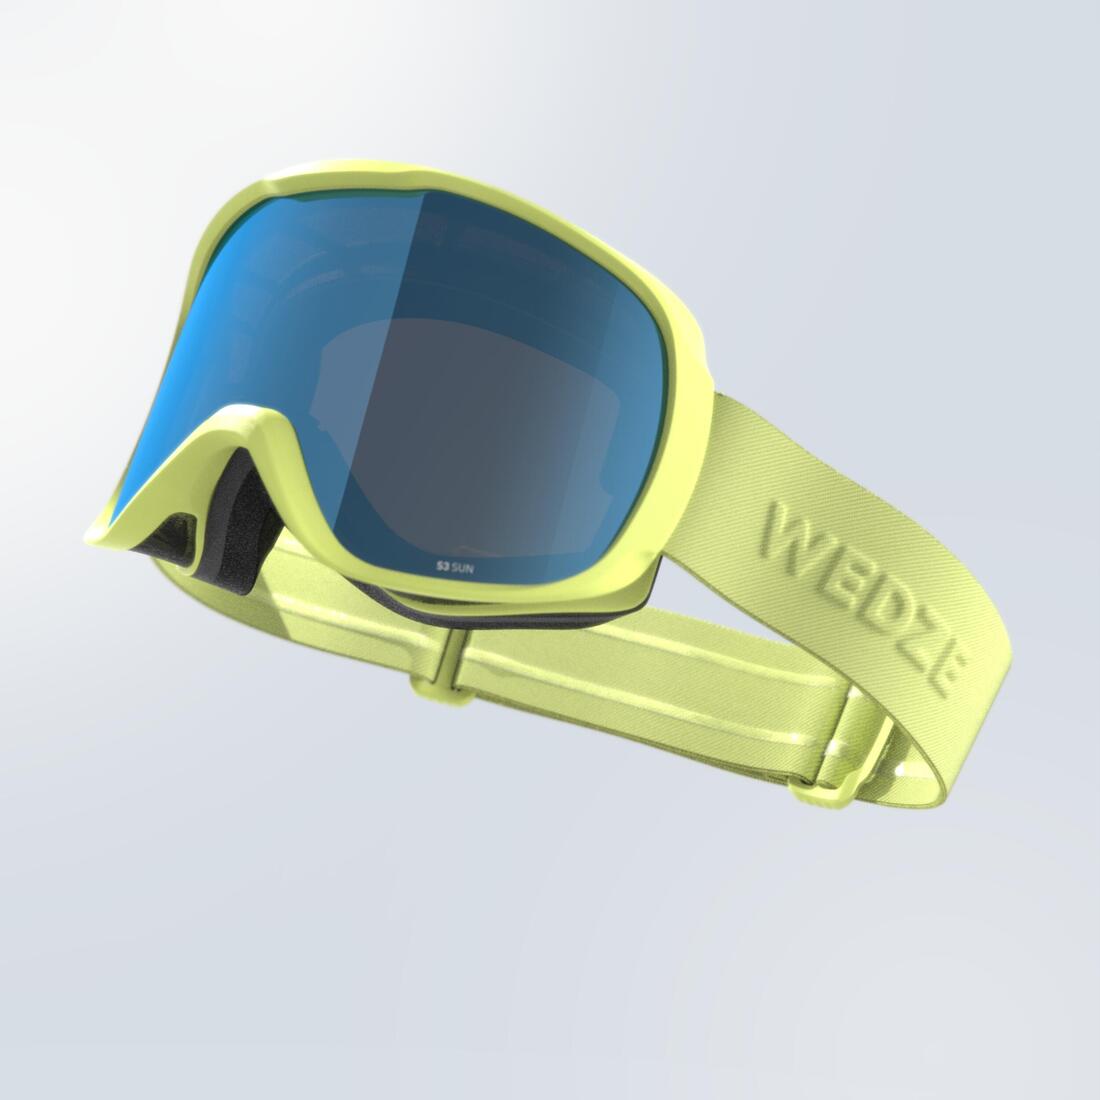 WED'ZE(ウェッゼ) スキー・スノーボード ゴーグルG 500 W 晴天用